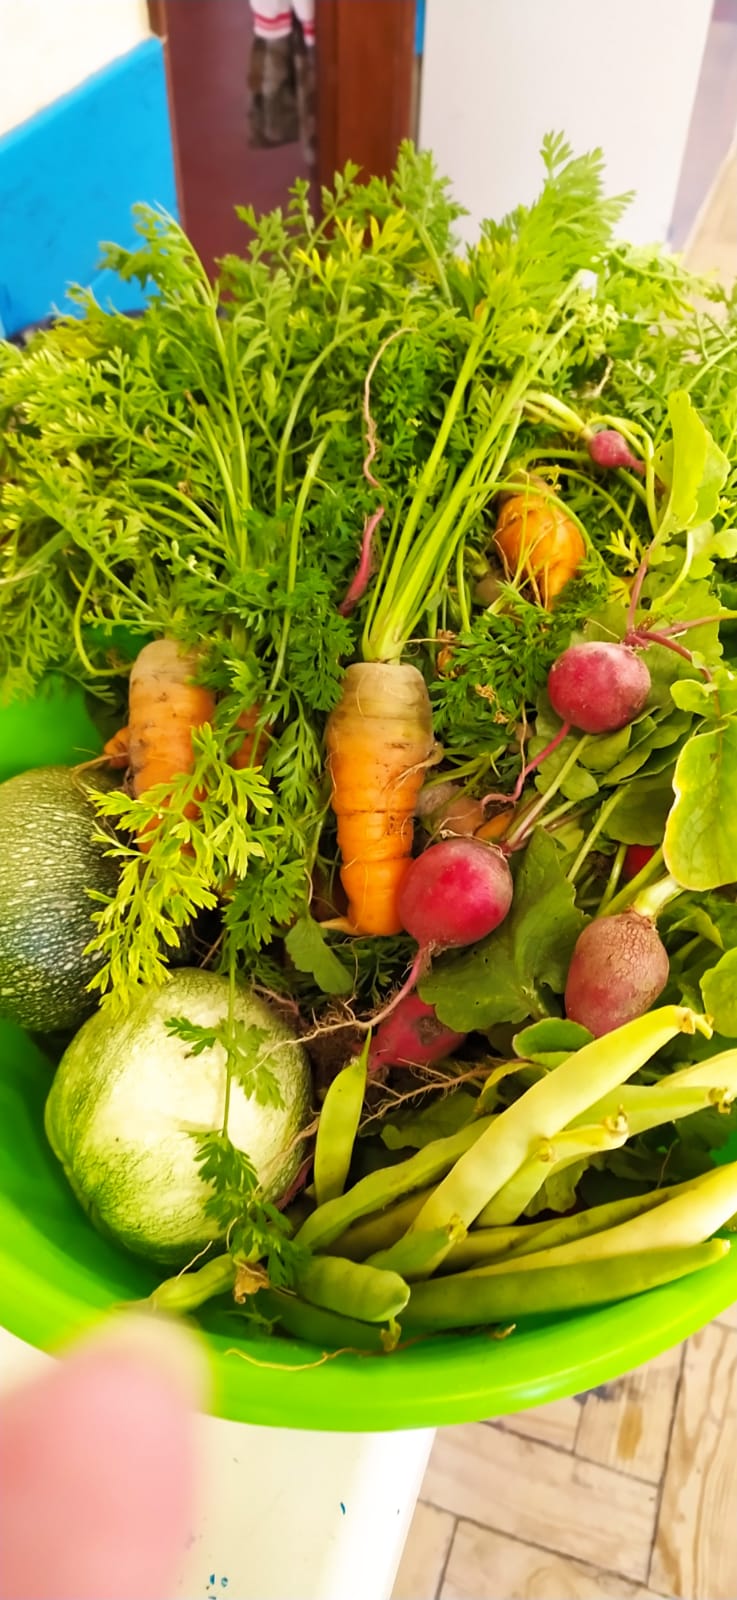 Os legumes colhidos na nossa horta, foram entregues no refeitório . Os alunos comeram-nos na sopa.